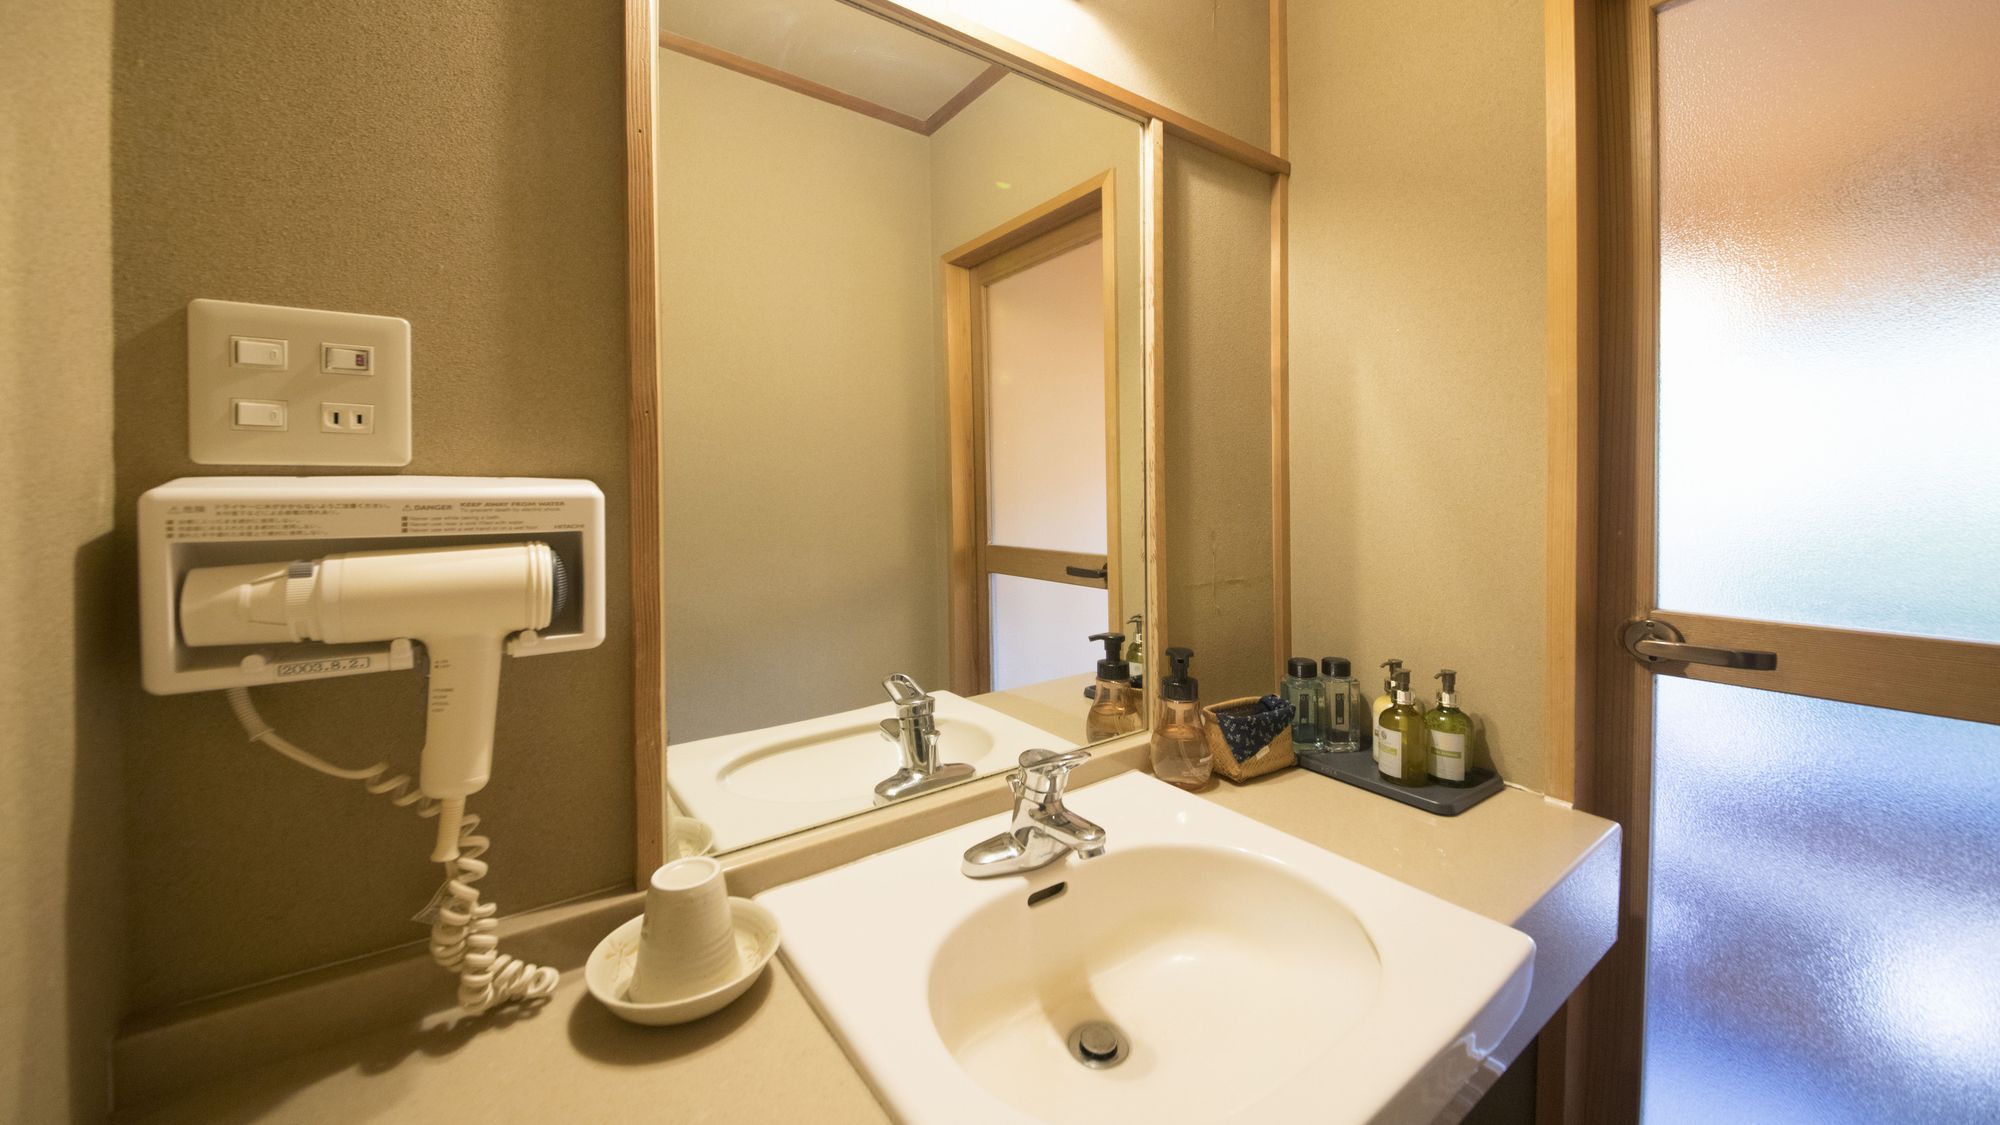 【C】源泉檜風呂・トイレ付標準和室(6畳タイプ) 客室一例